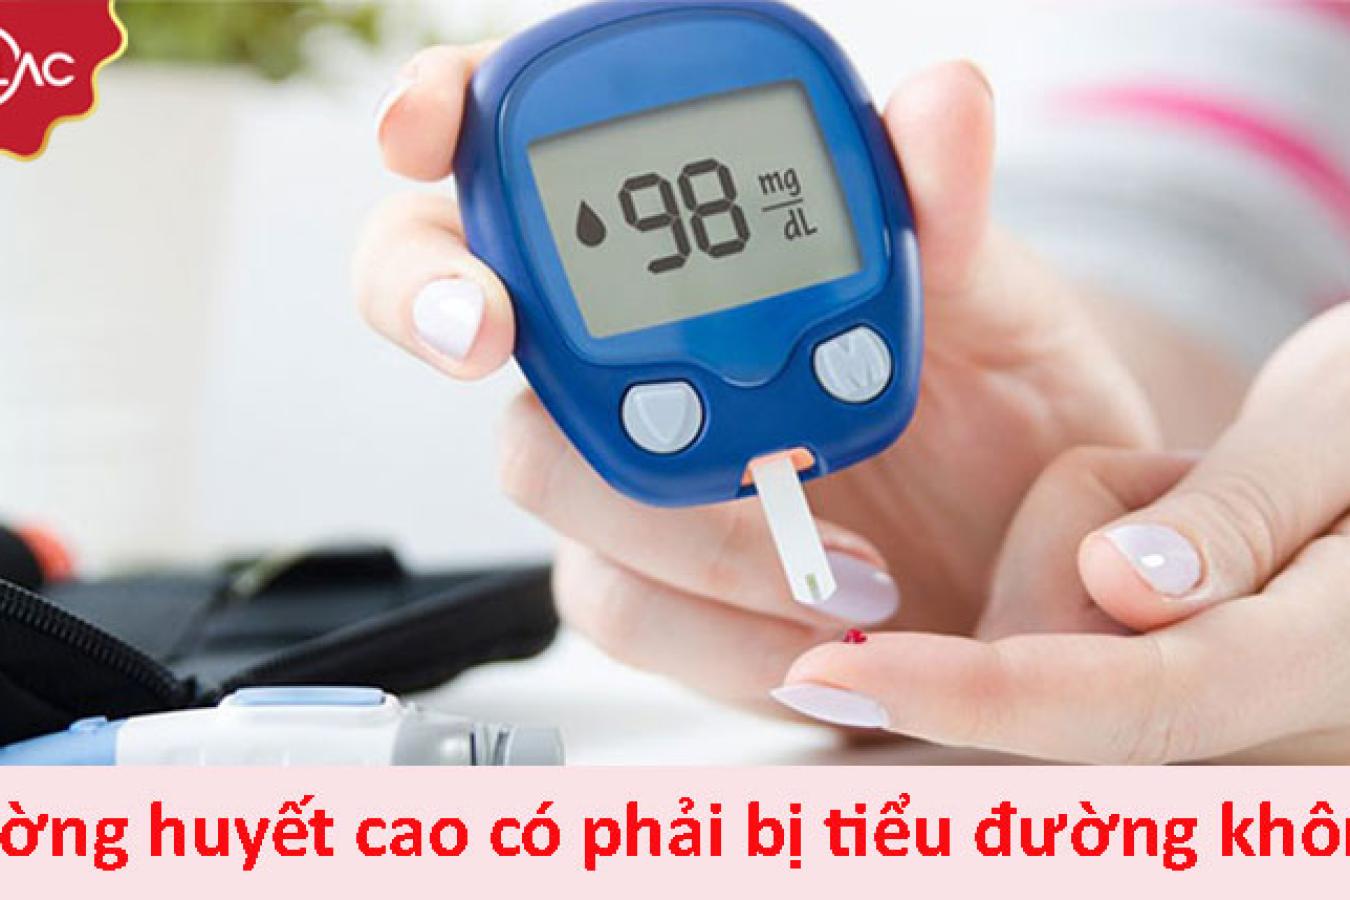 Chuyên gia giải đáp: Đường huyết cao có phải bị tiểu đường không?